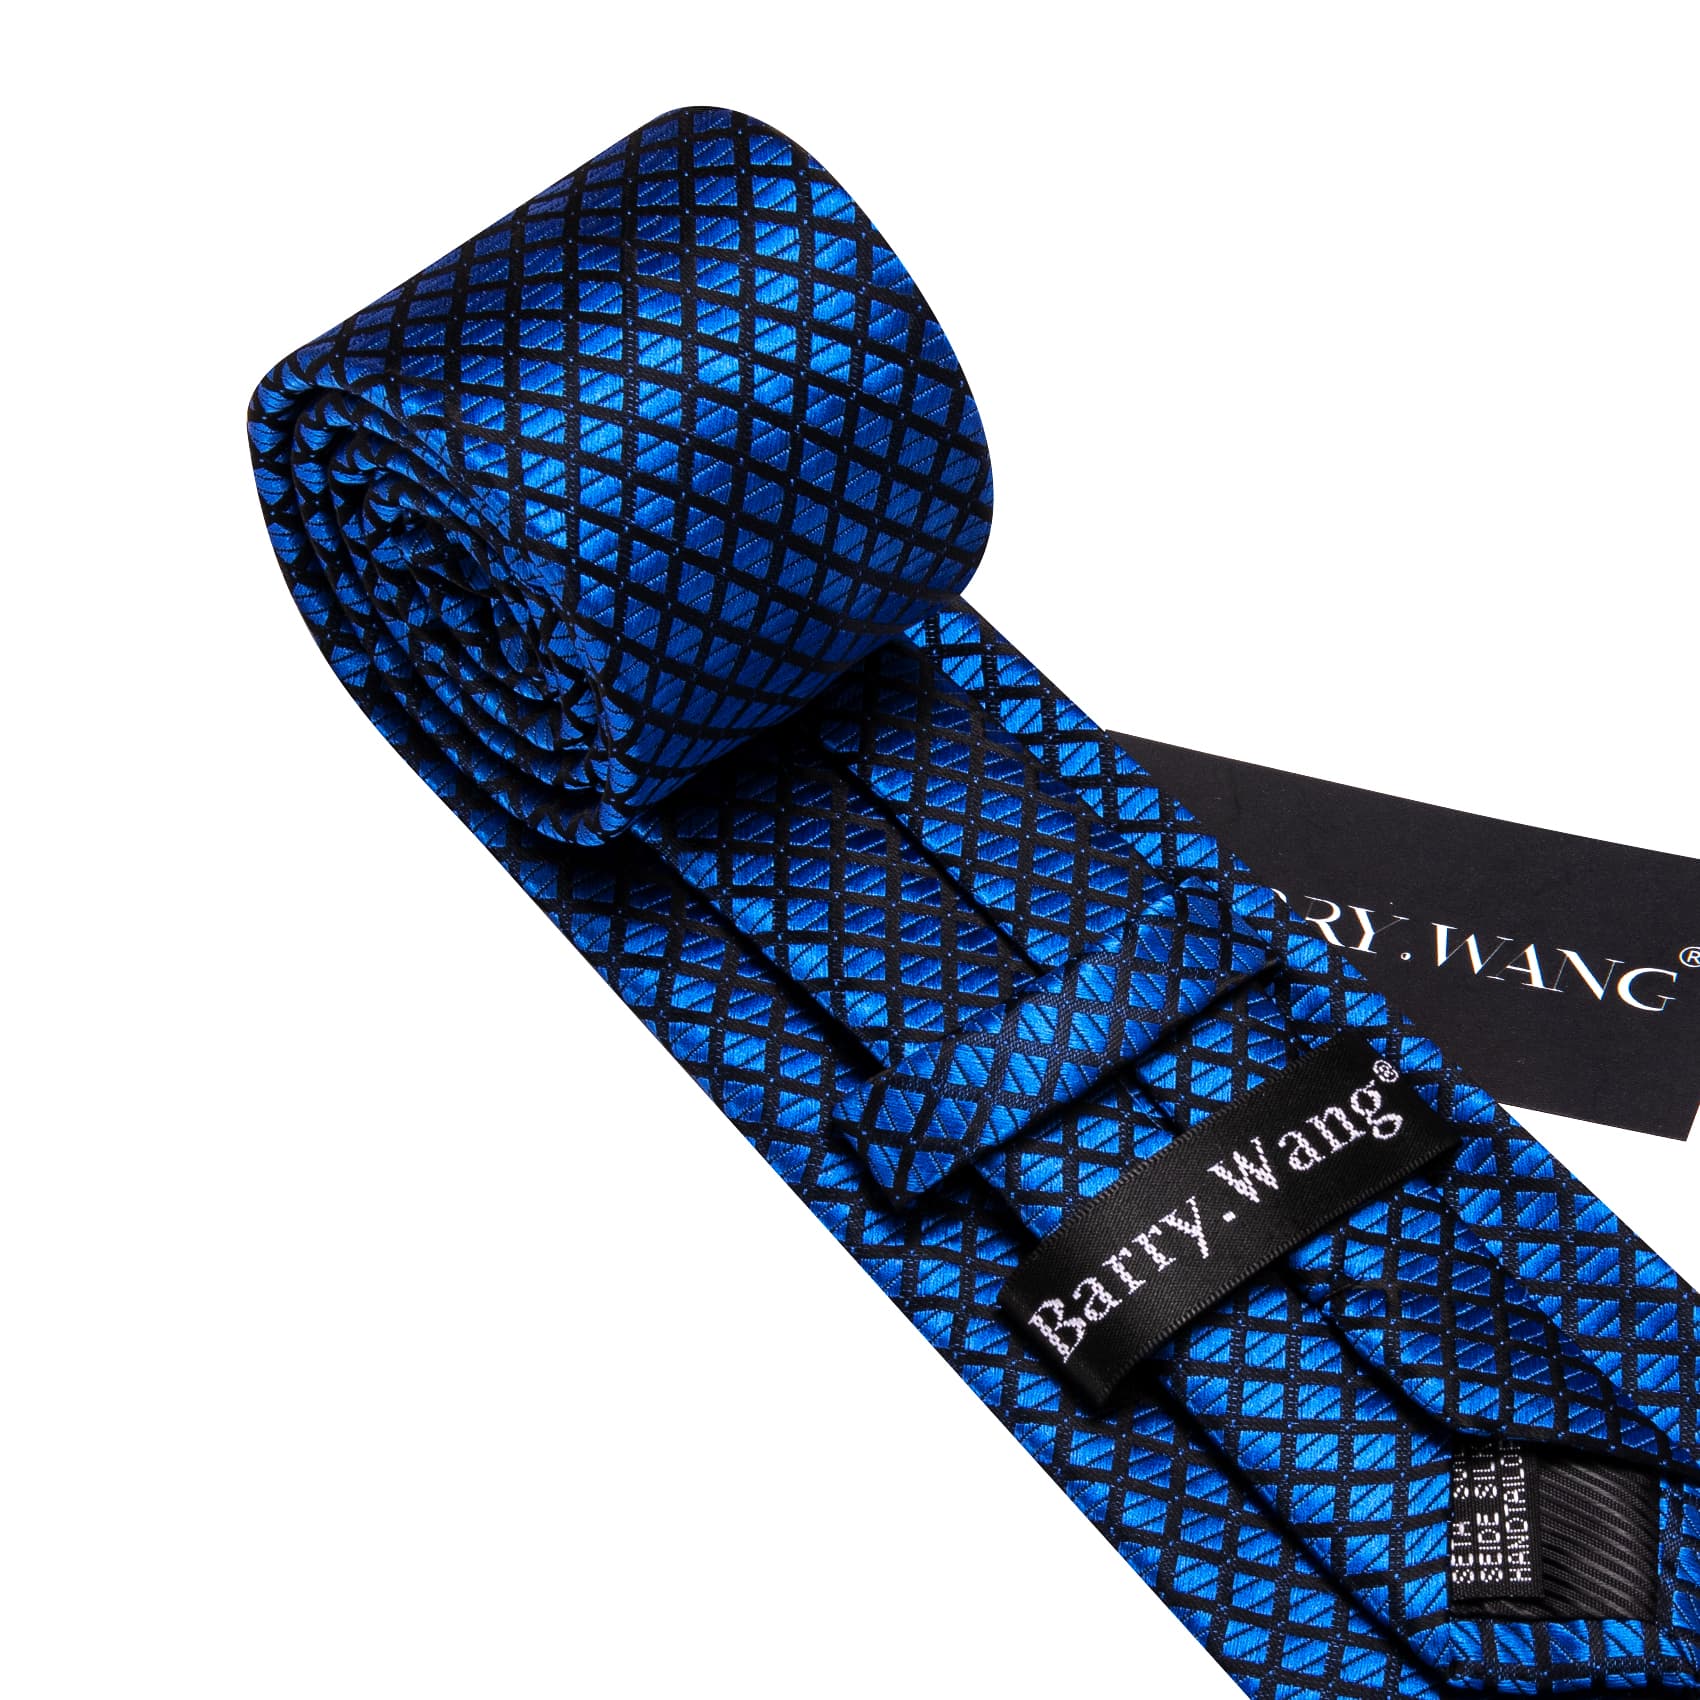  Plaid Tie Blue Black Checkered Necktie and Cufflink Set